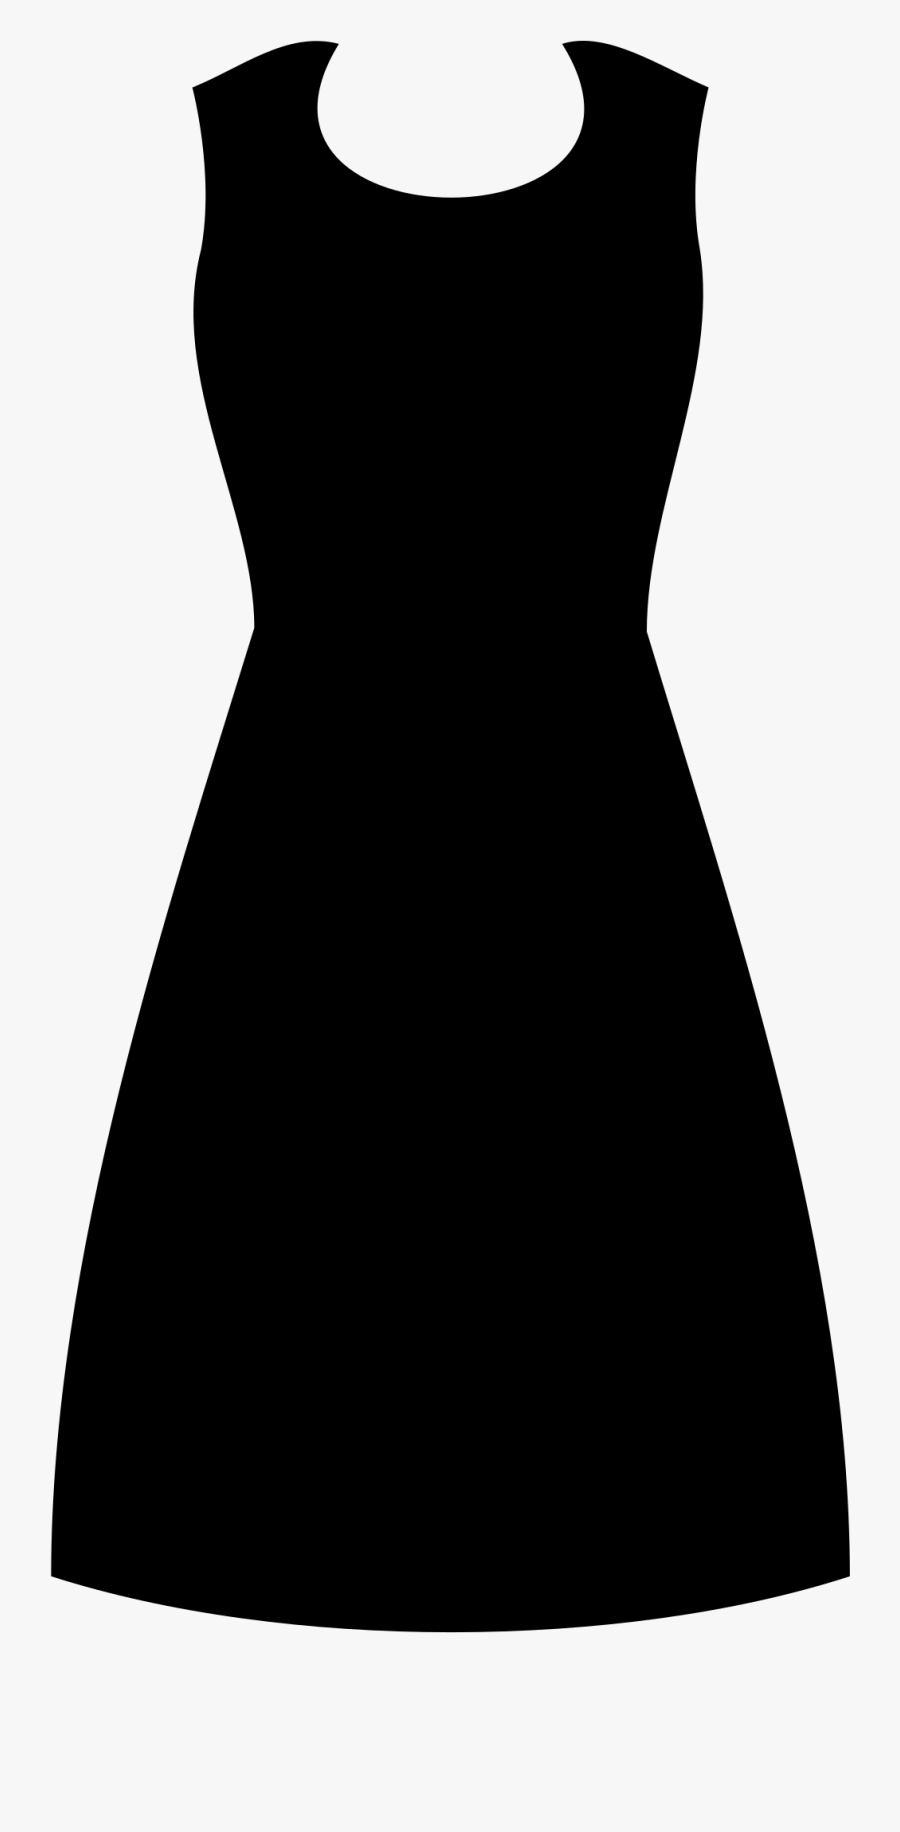 Dress Svg Formal - Little Black Dress, Transparent Clipart